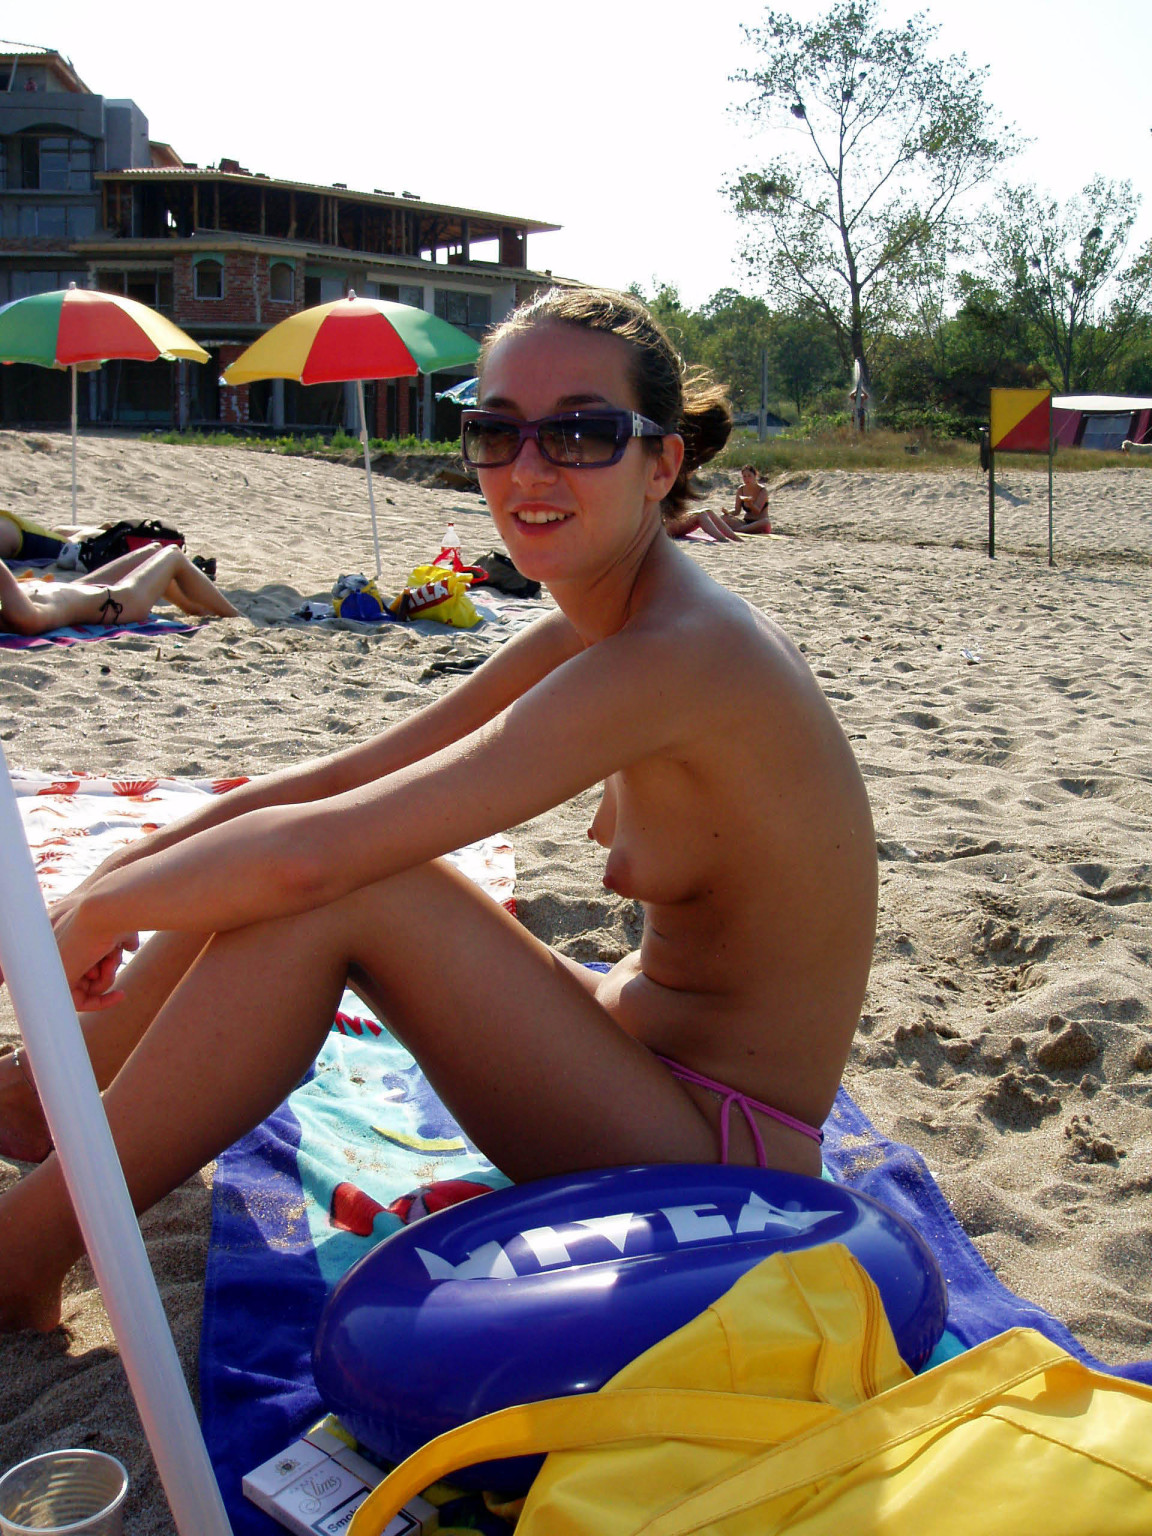 Divertirse es fácil en la playa para dos jóvenes desnudos
 #72249779